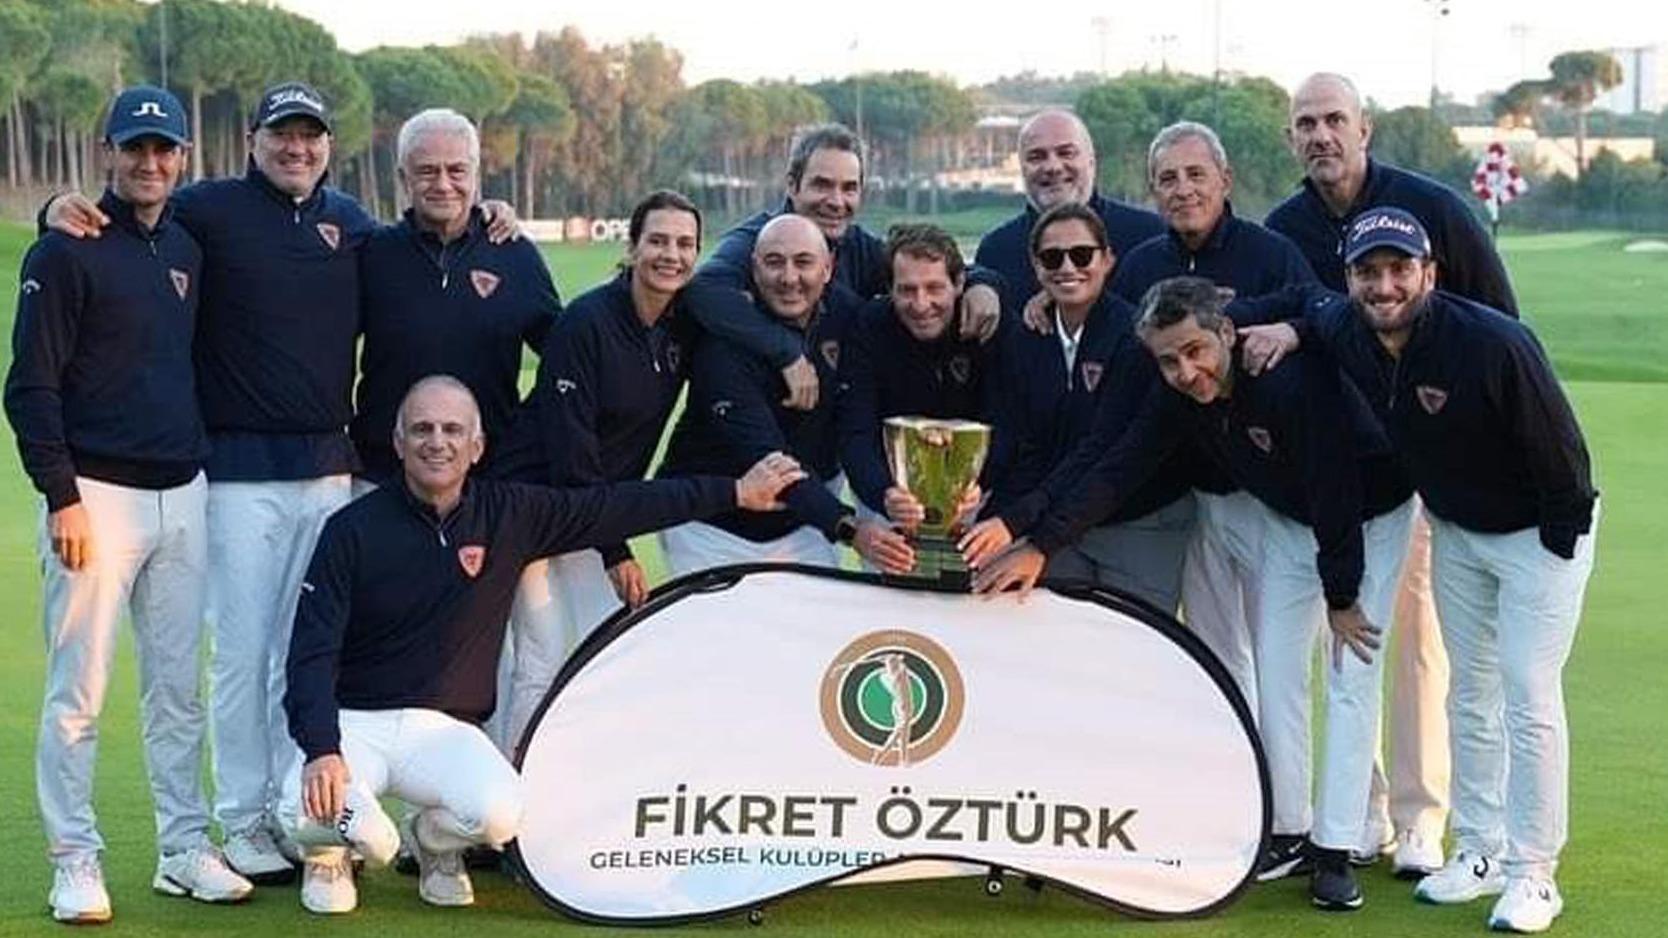 Fikret Öztürk Kulüplerarası Golf Turnuvası'nda şampiyon belli oldu